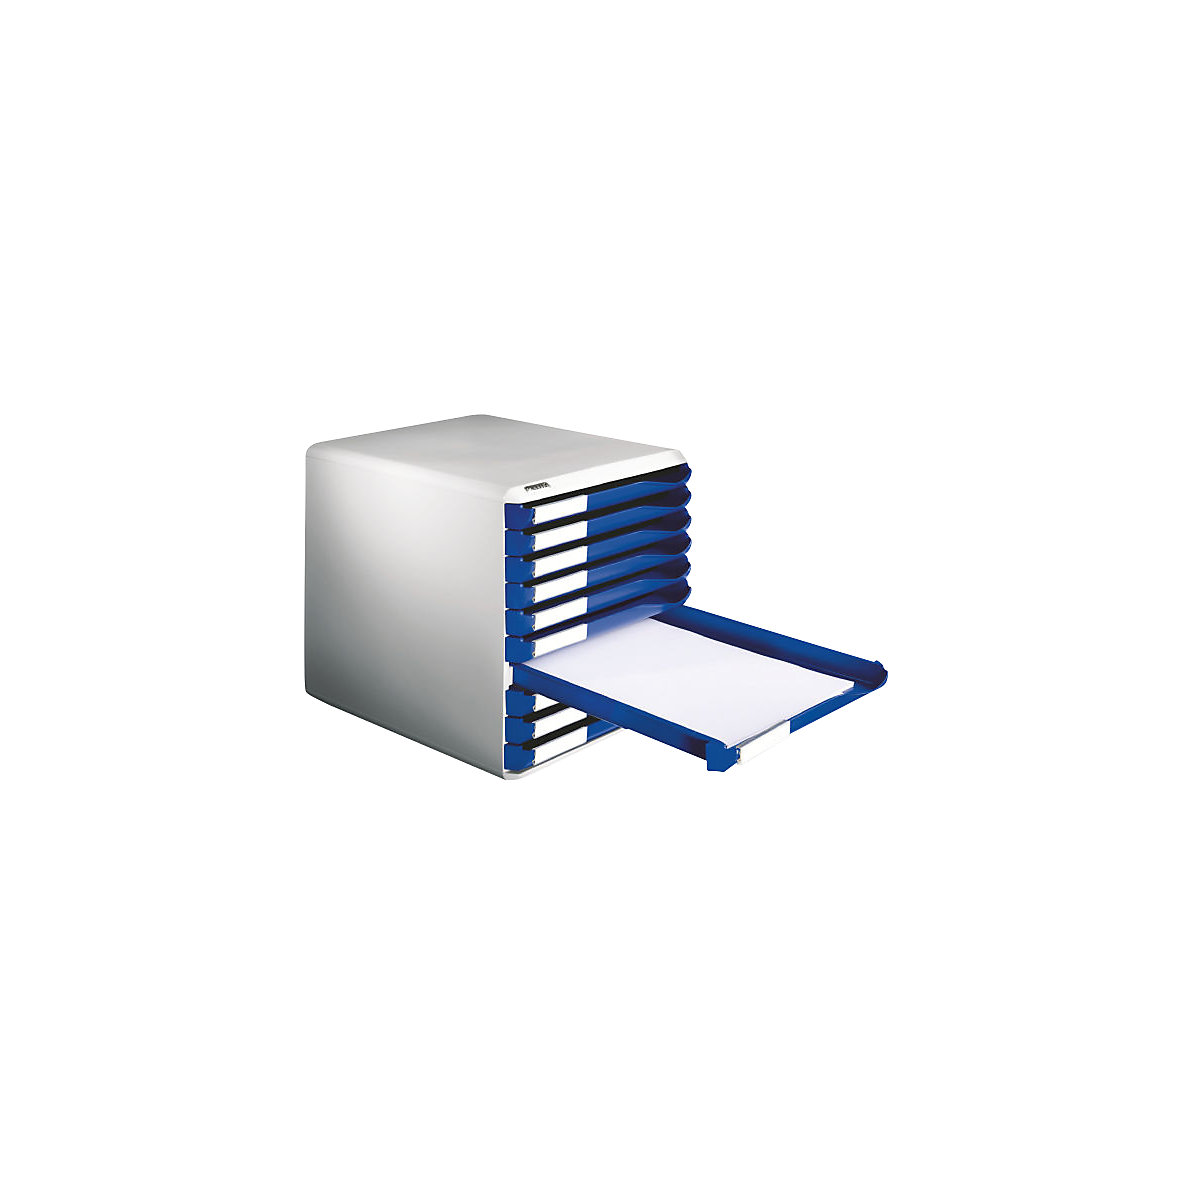 Kutija za odlaganje – Leitz, komplet za poštu i obrasce, kućište u sivoj boji, ladice u plavoj boji, 10 ladica-5